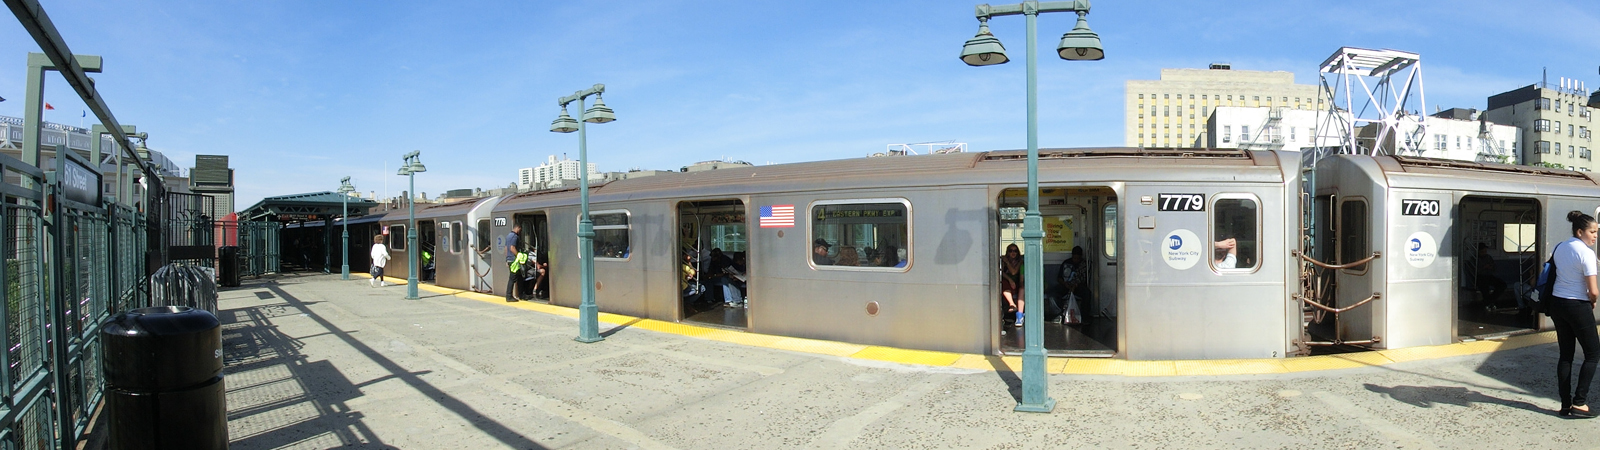 Panoramaaufnahme Zug der New Yorker Subway an der oberirdischen Station "161 Street - Yankees Stadium Station"